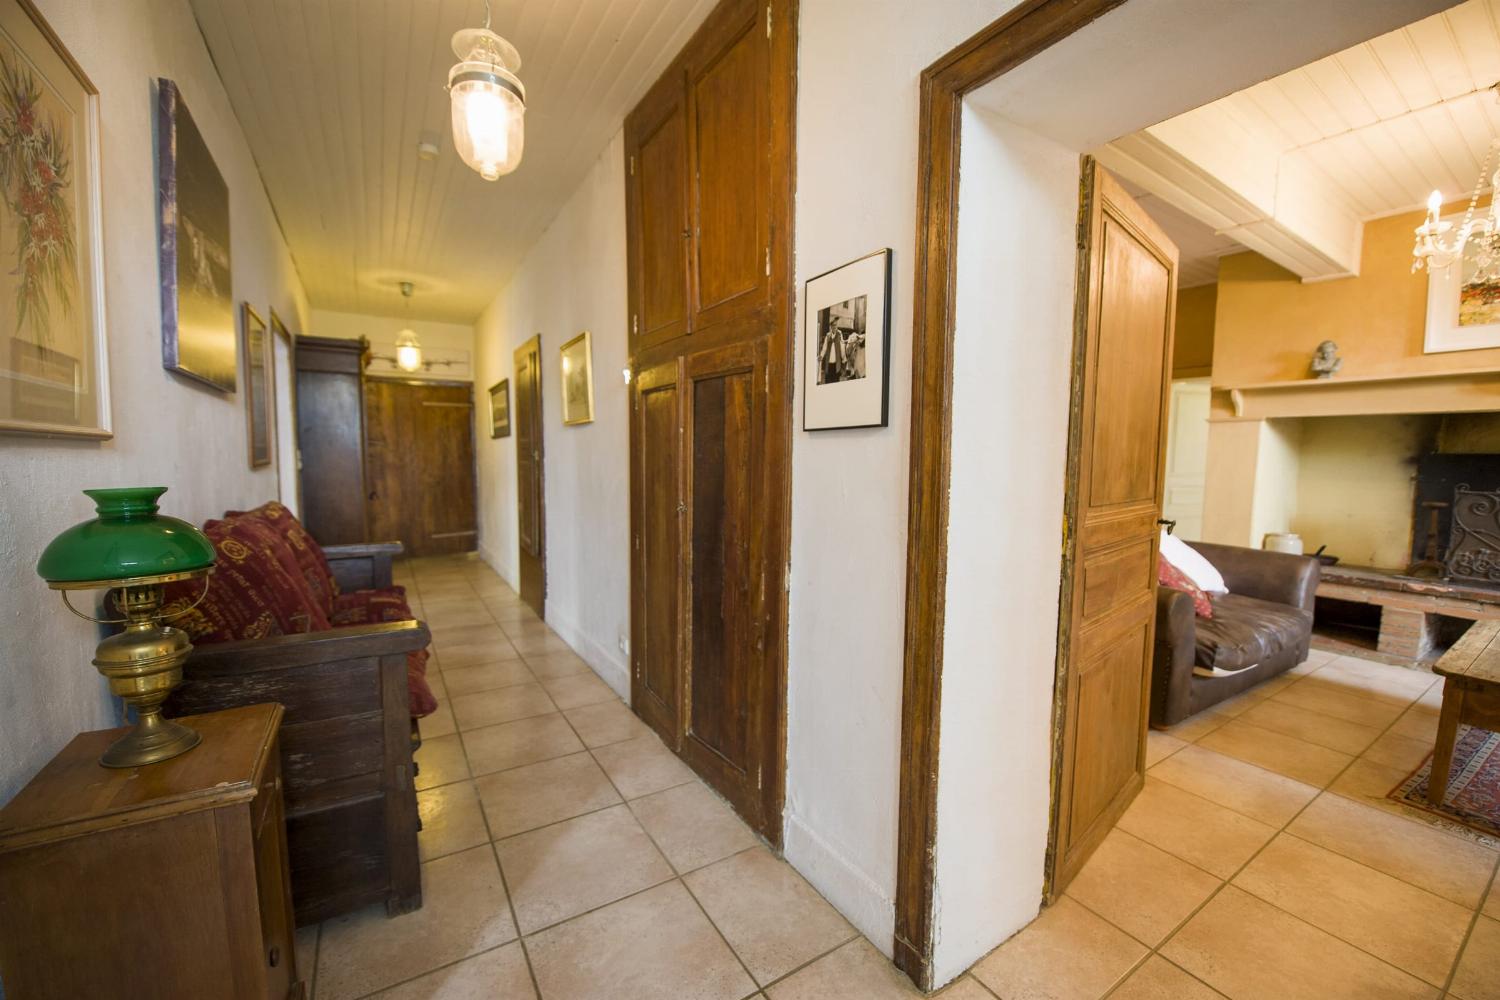 Hallway | Rental home in Haute-Garonne